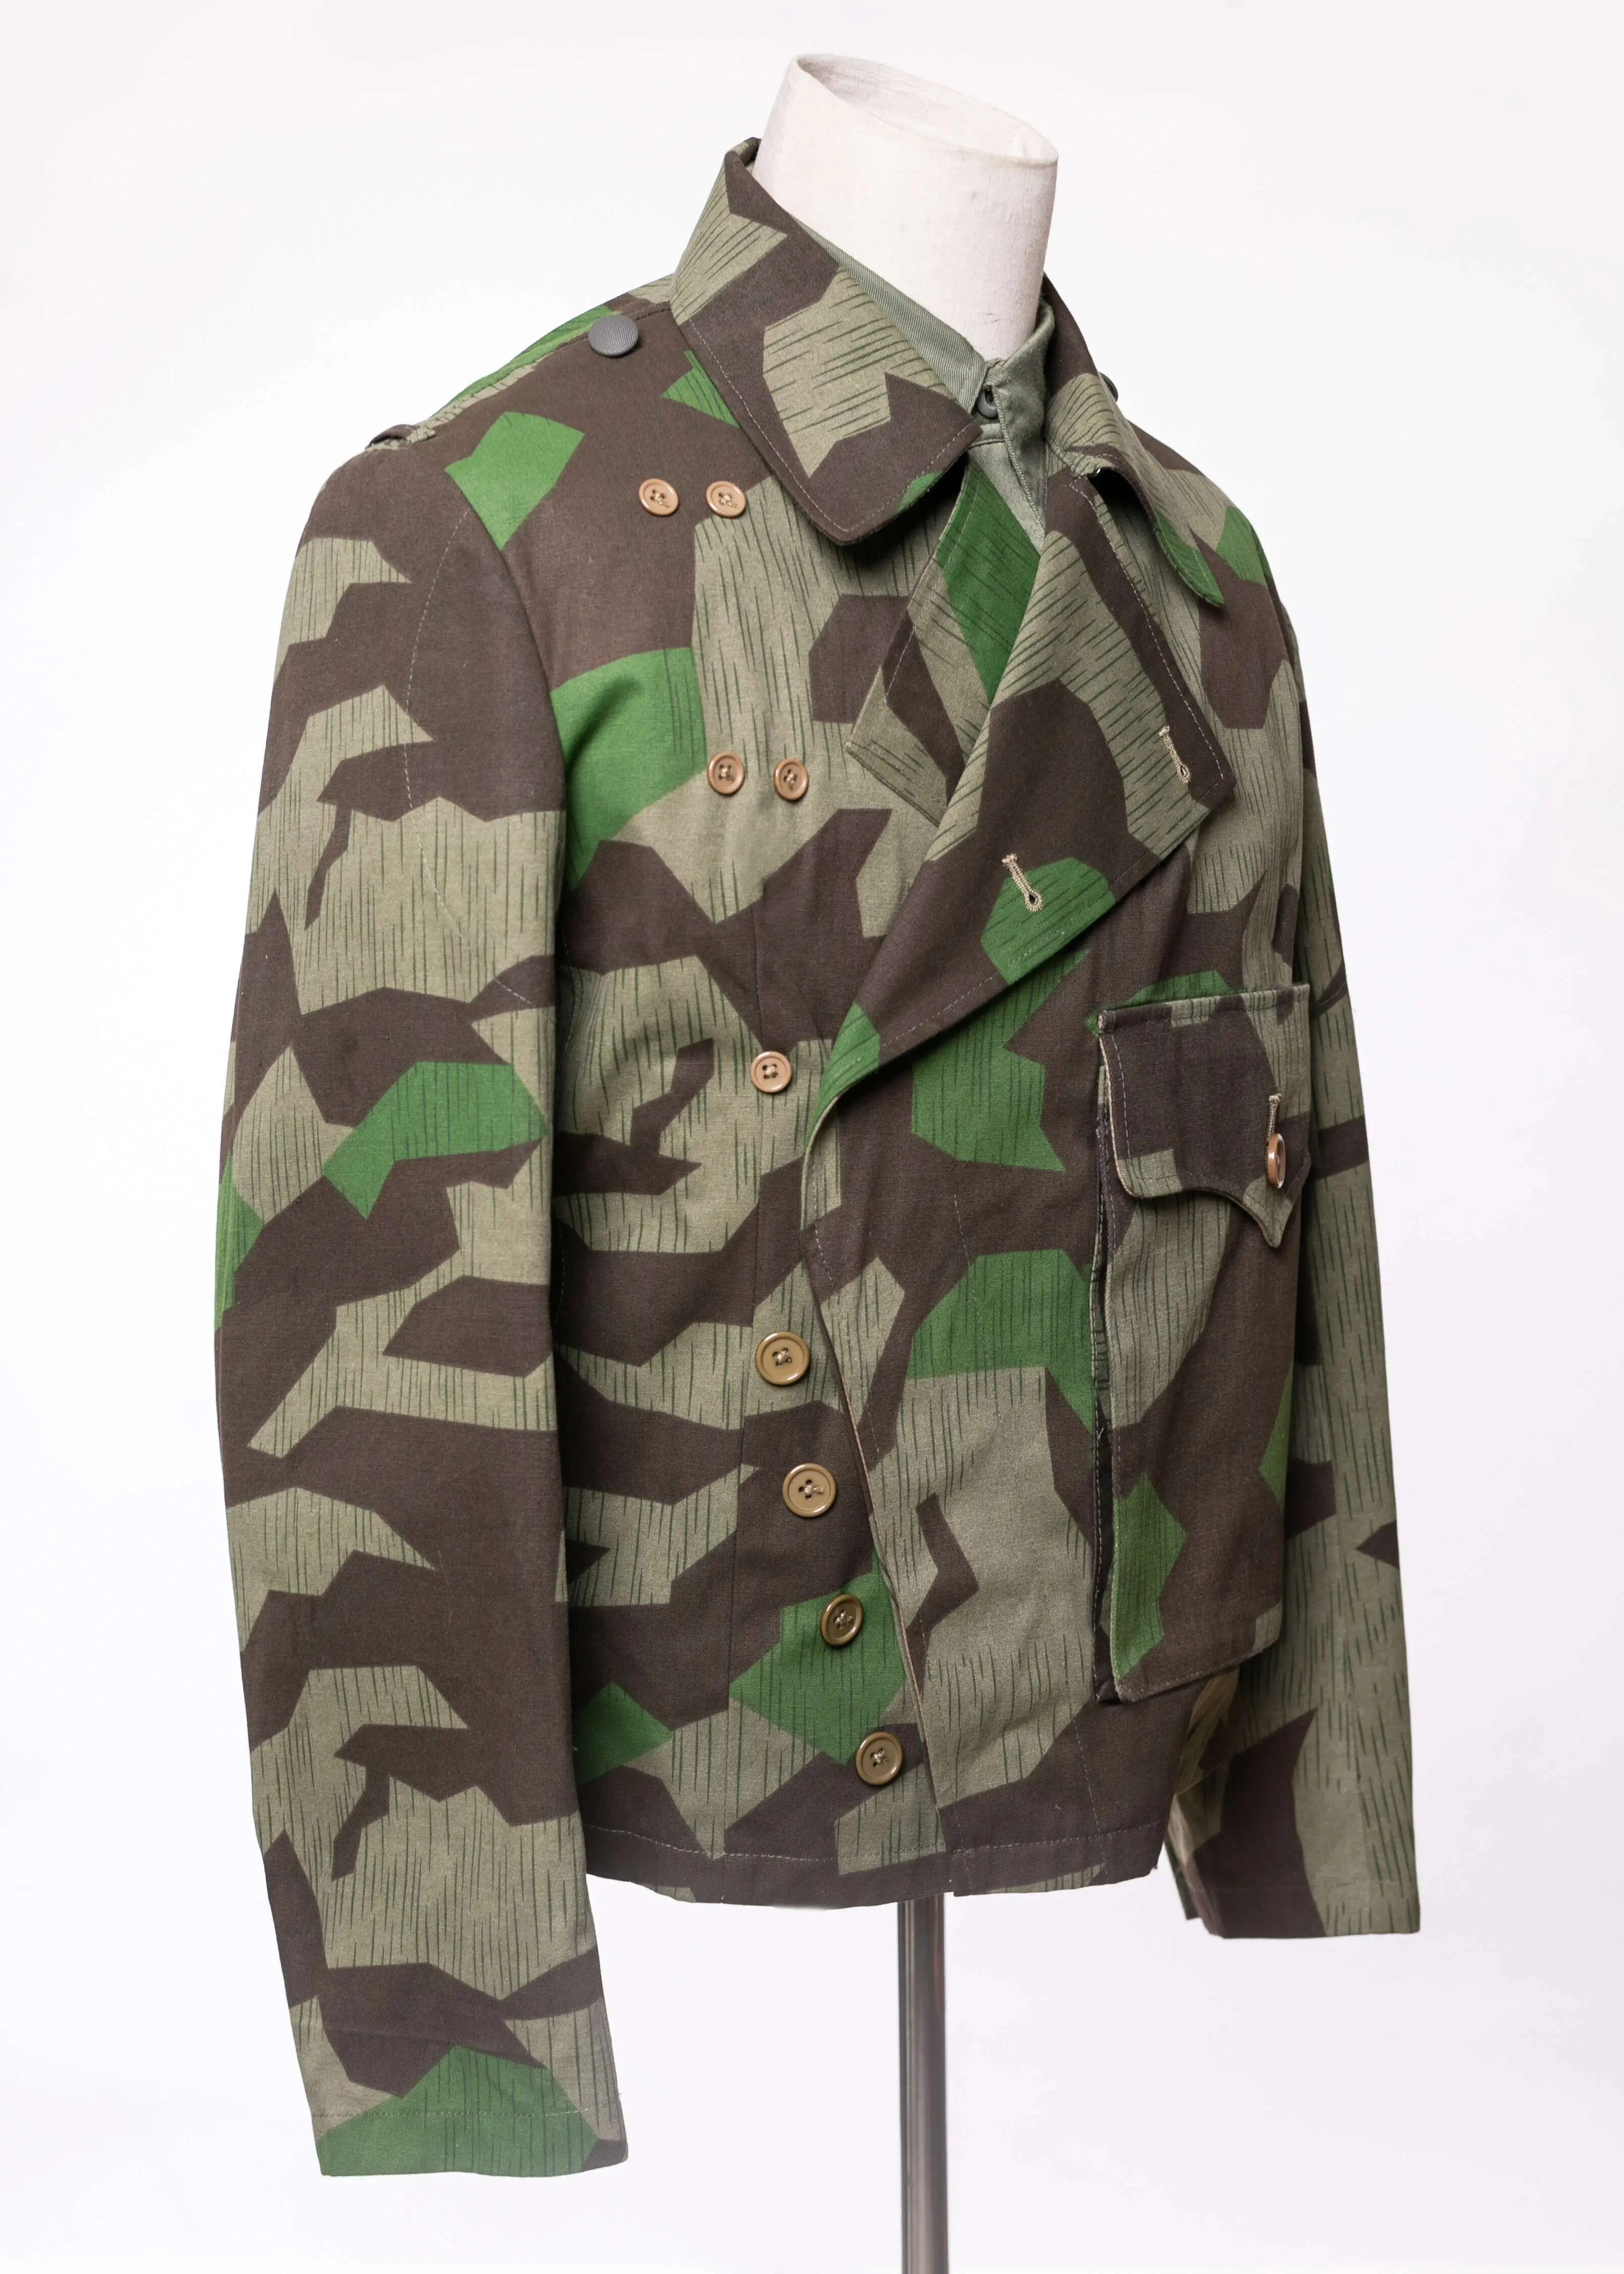 EMD WWII German Heer Splinter camo panzer wrap/jacket